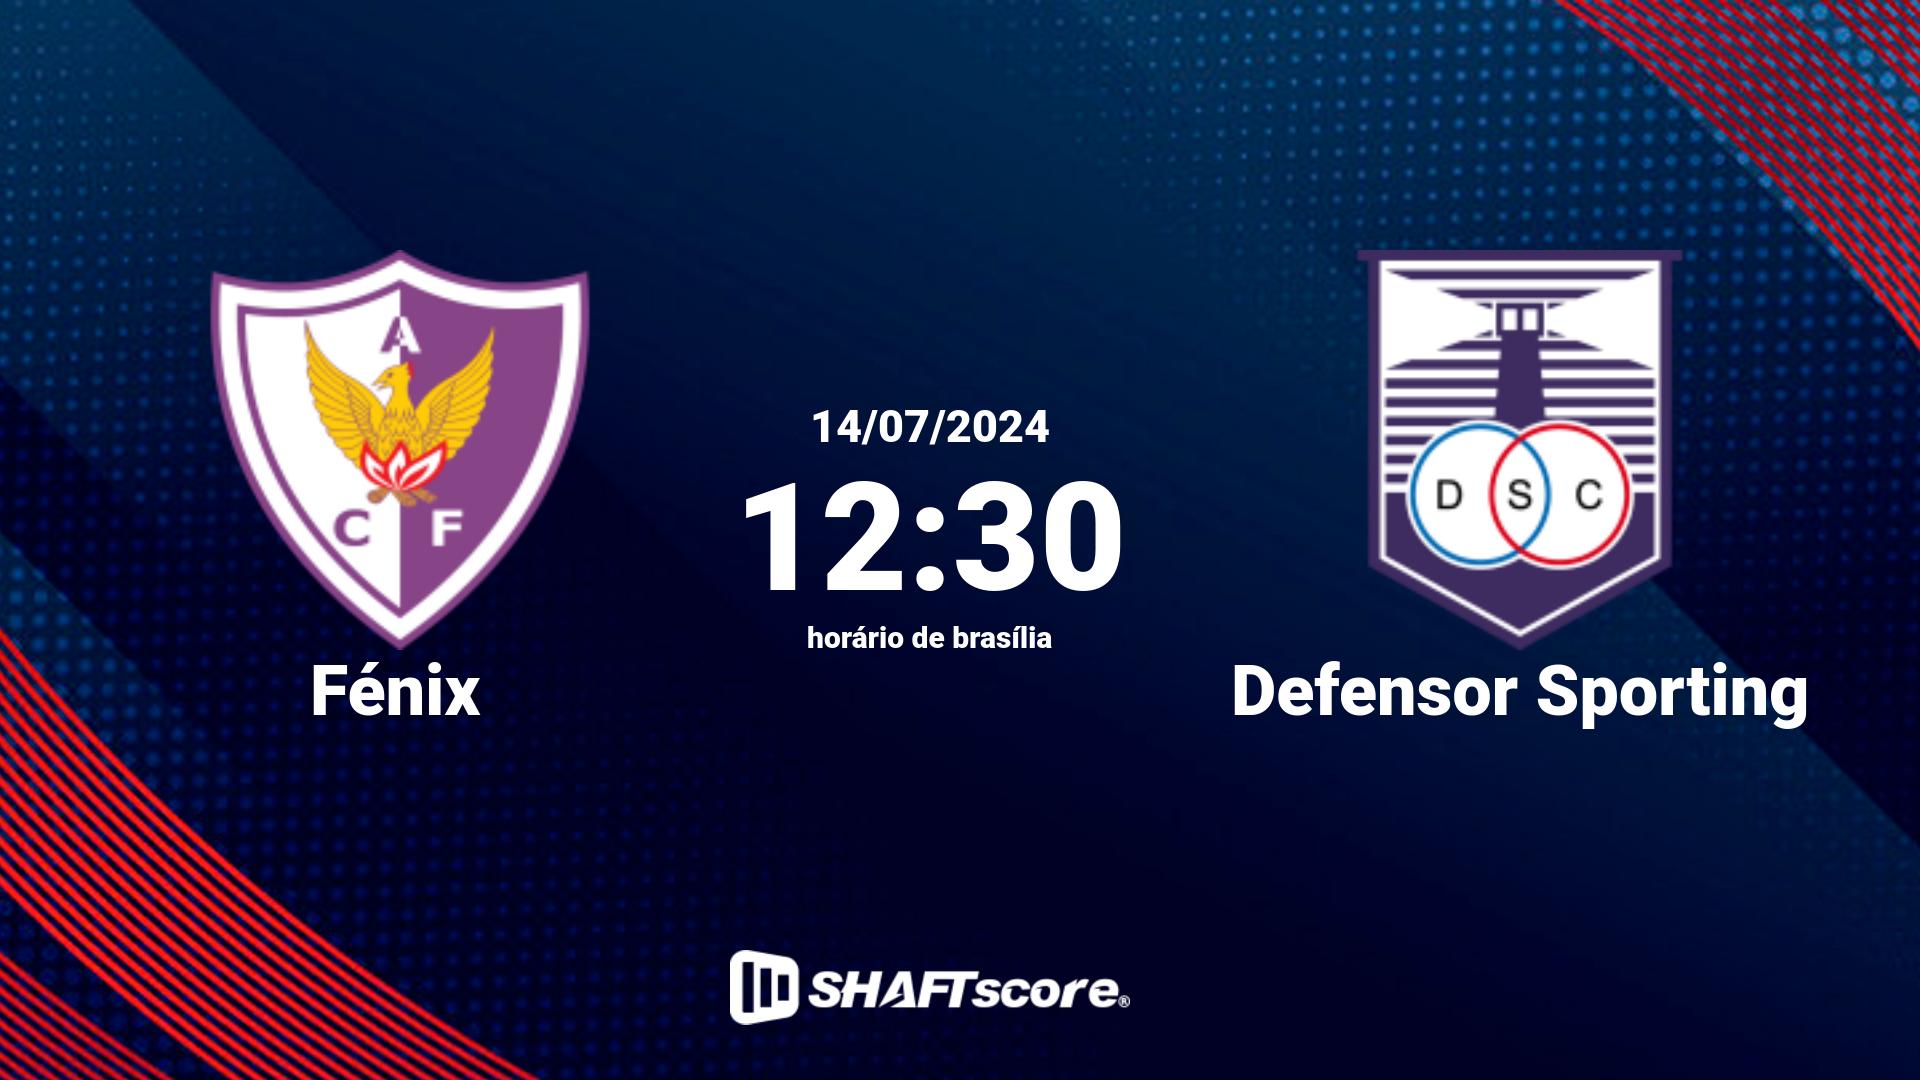 Estatísticas do jogo Fénix vs Defensor Sporting 14.07 12:30